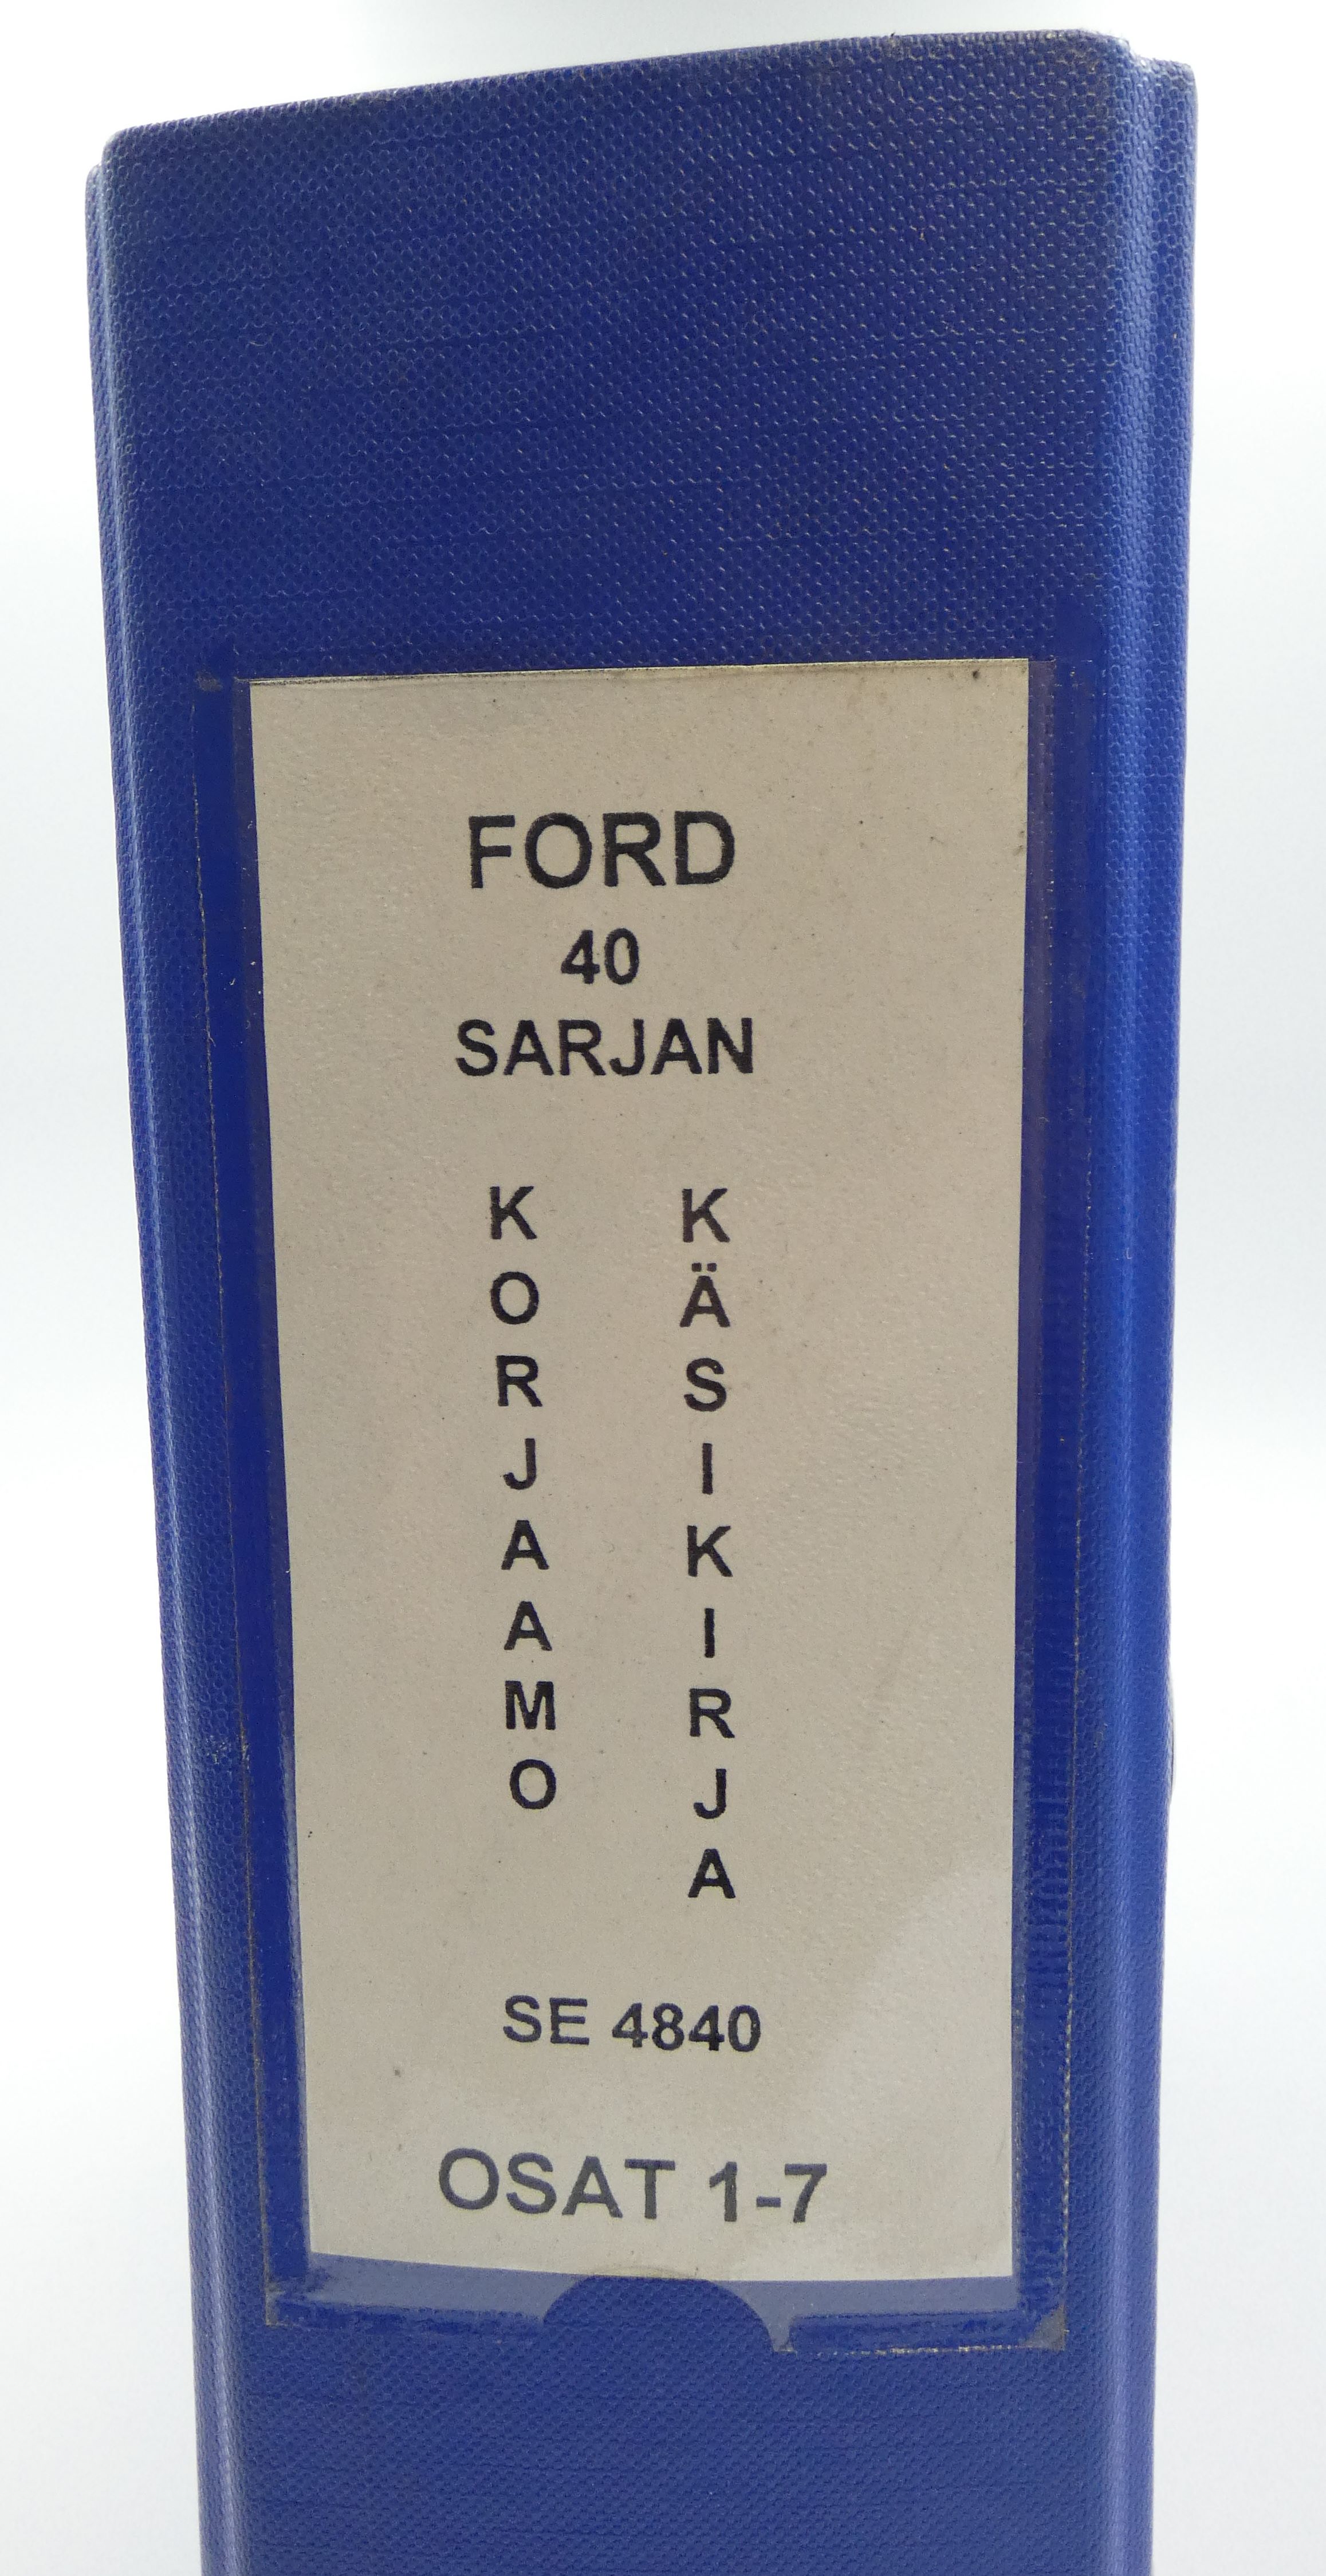 Ford New Holland 40-sarjan korjaamokäsikirja osat 1-7